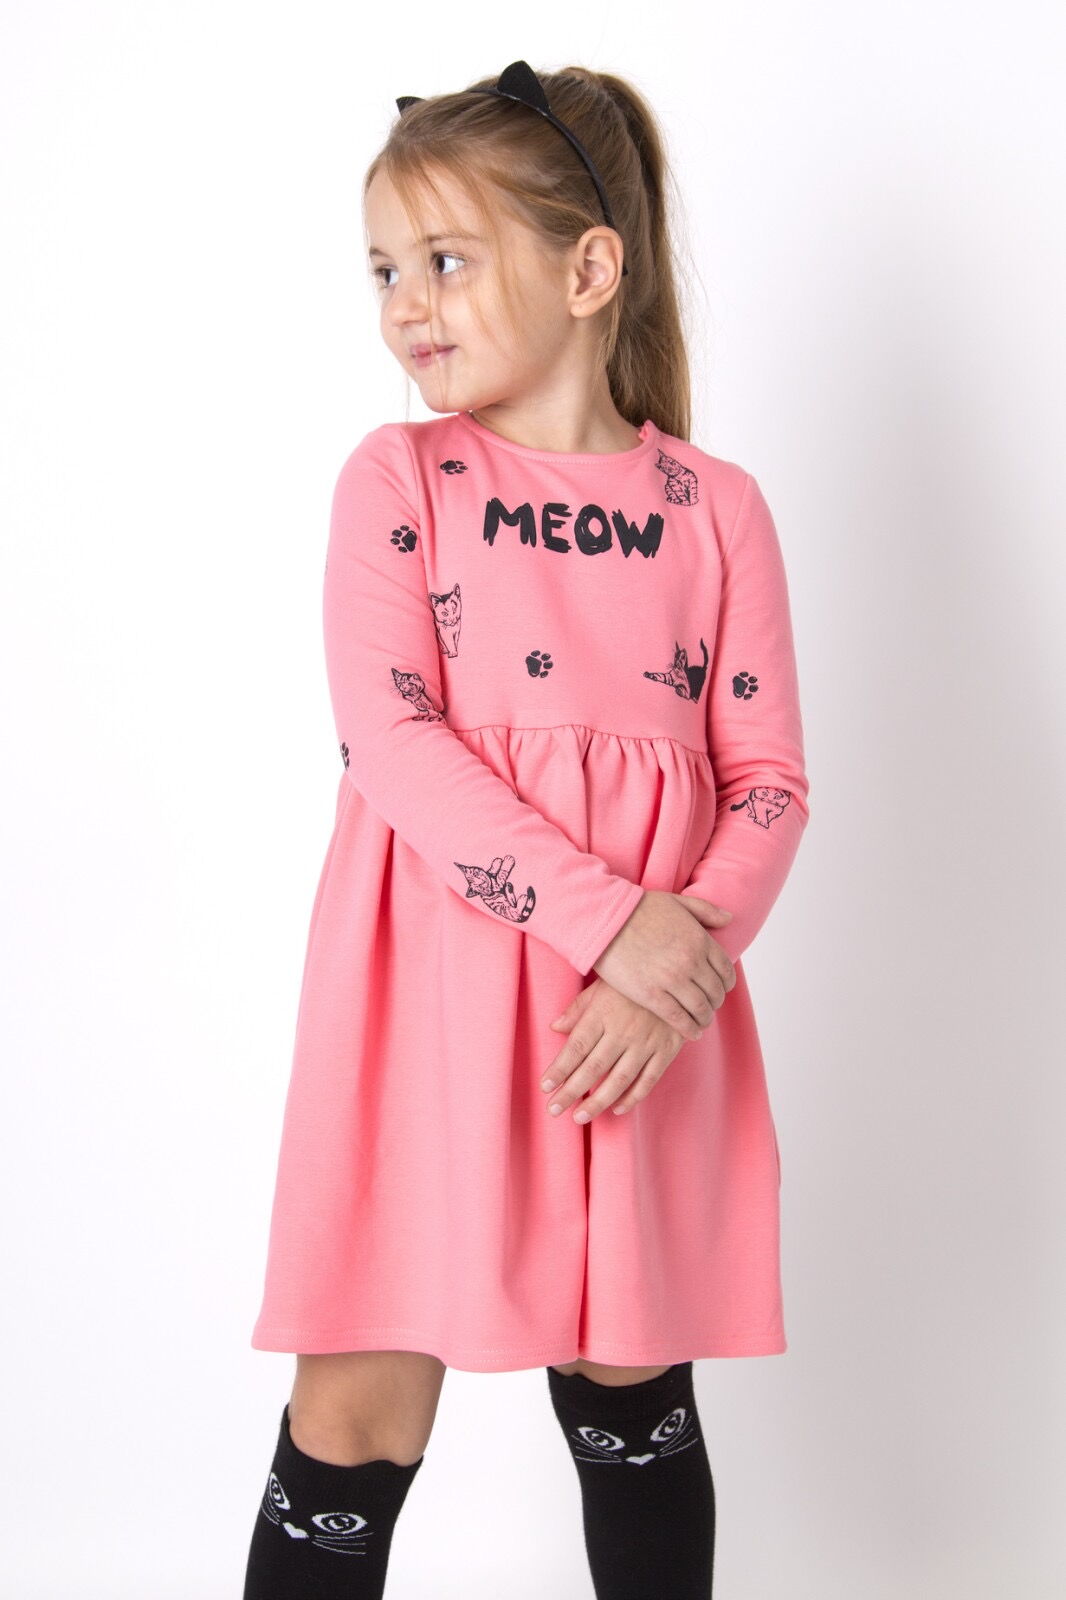 Теплое платье для девочки Mevis Котики персиковое 4902-01 - цена